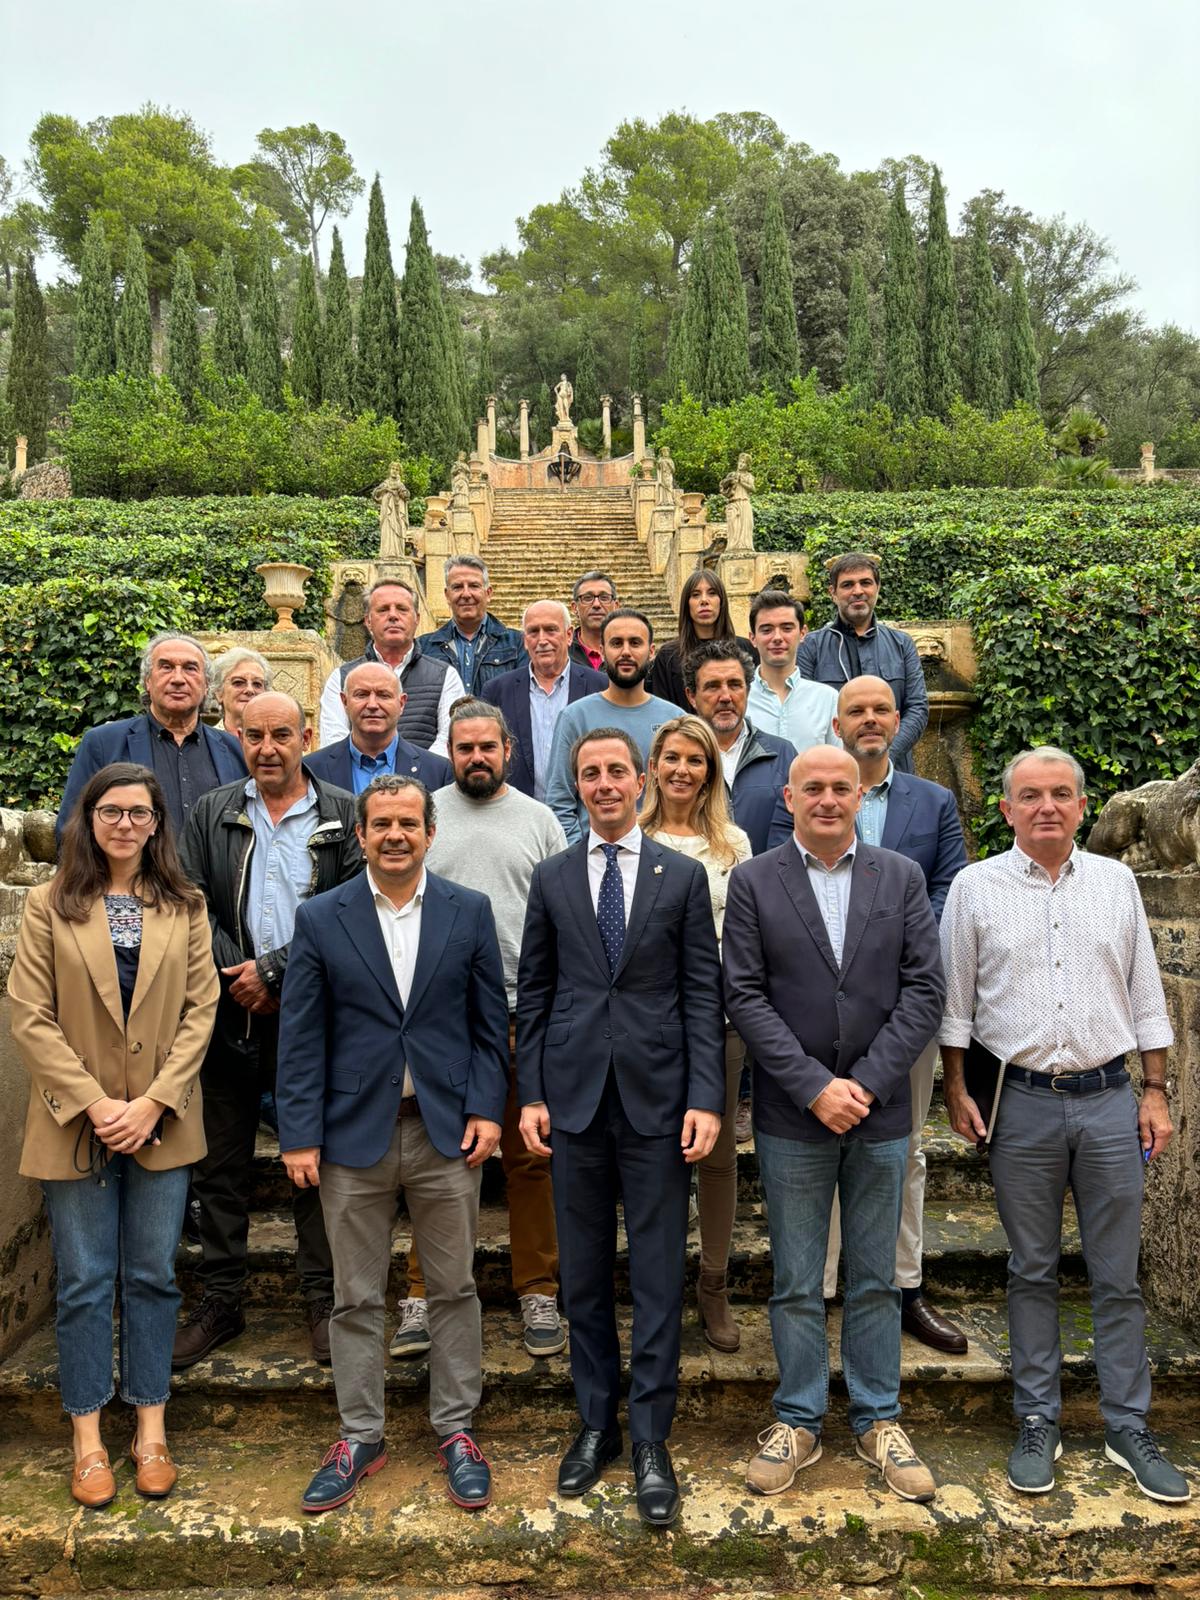 El president del Consell de Mallorca, el conseller de Presidència, el director insular de la Serra de Tramuntana i representants dels vint municipis